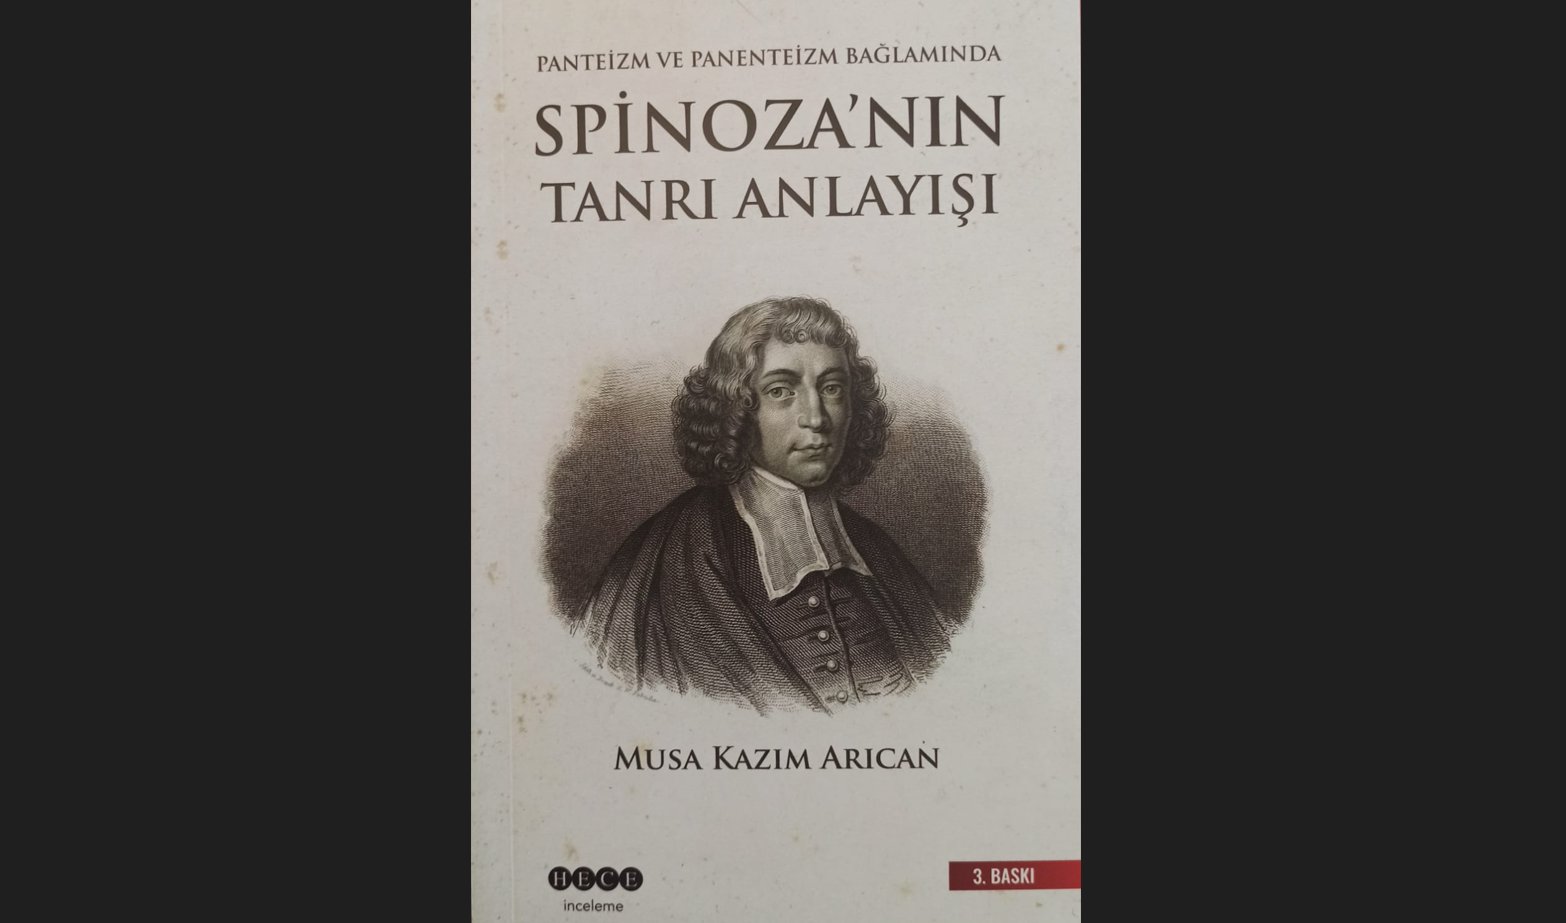 “Spinoza’ nın Tanrı Anlayışı” kitabının dördüncü baskısı çıktı